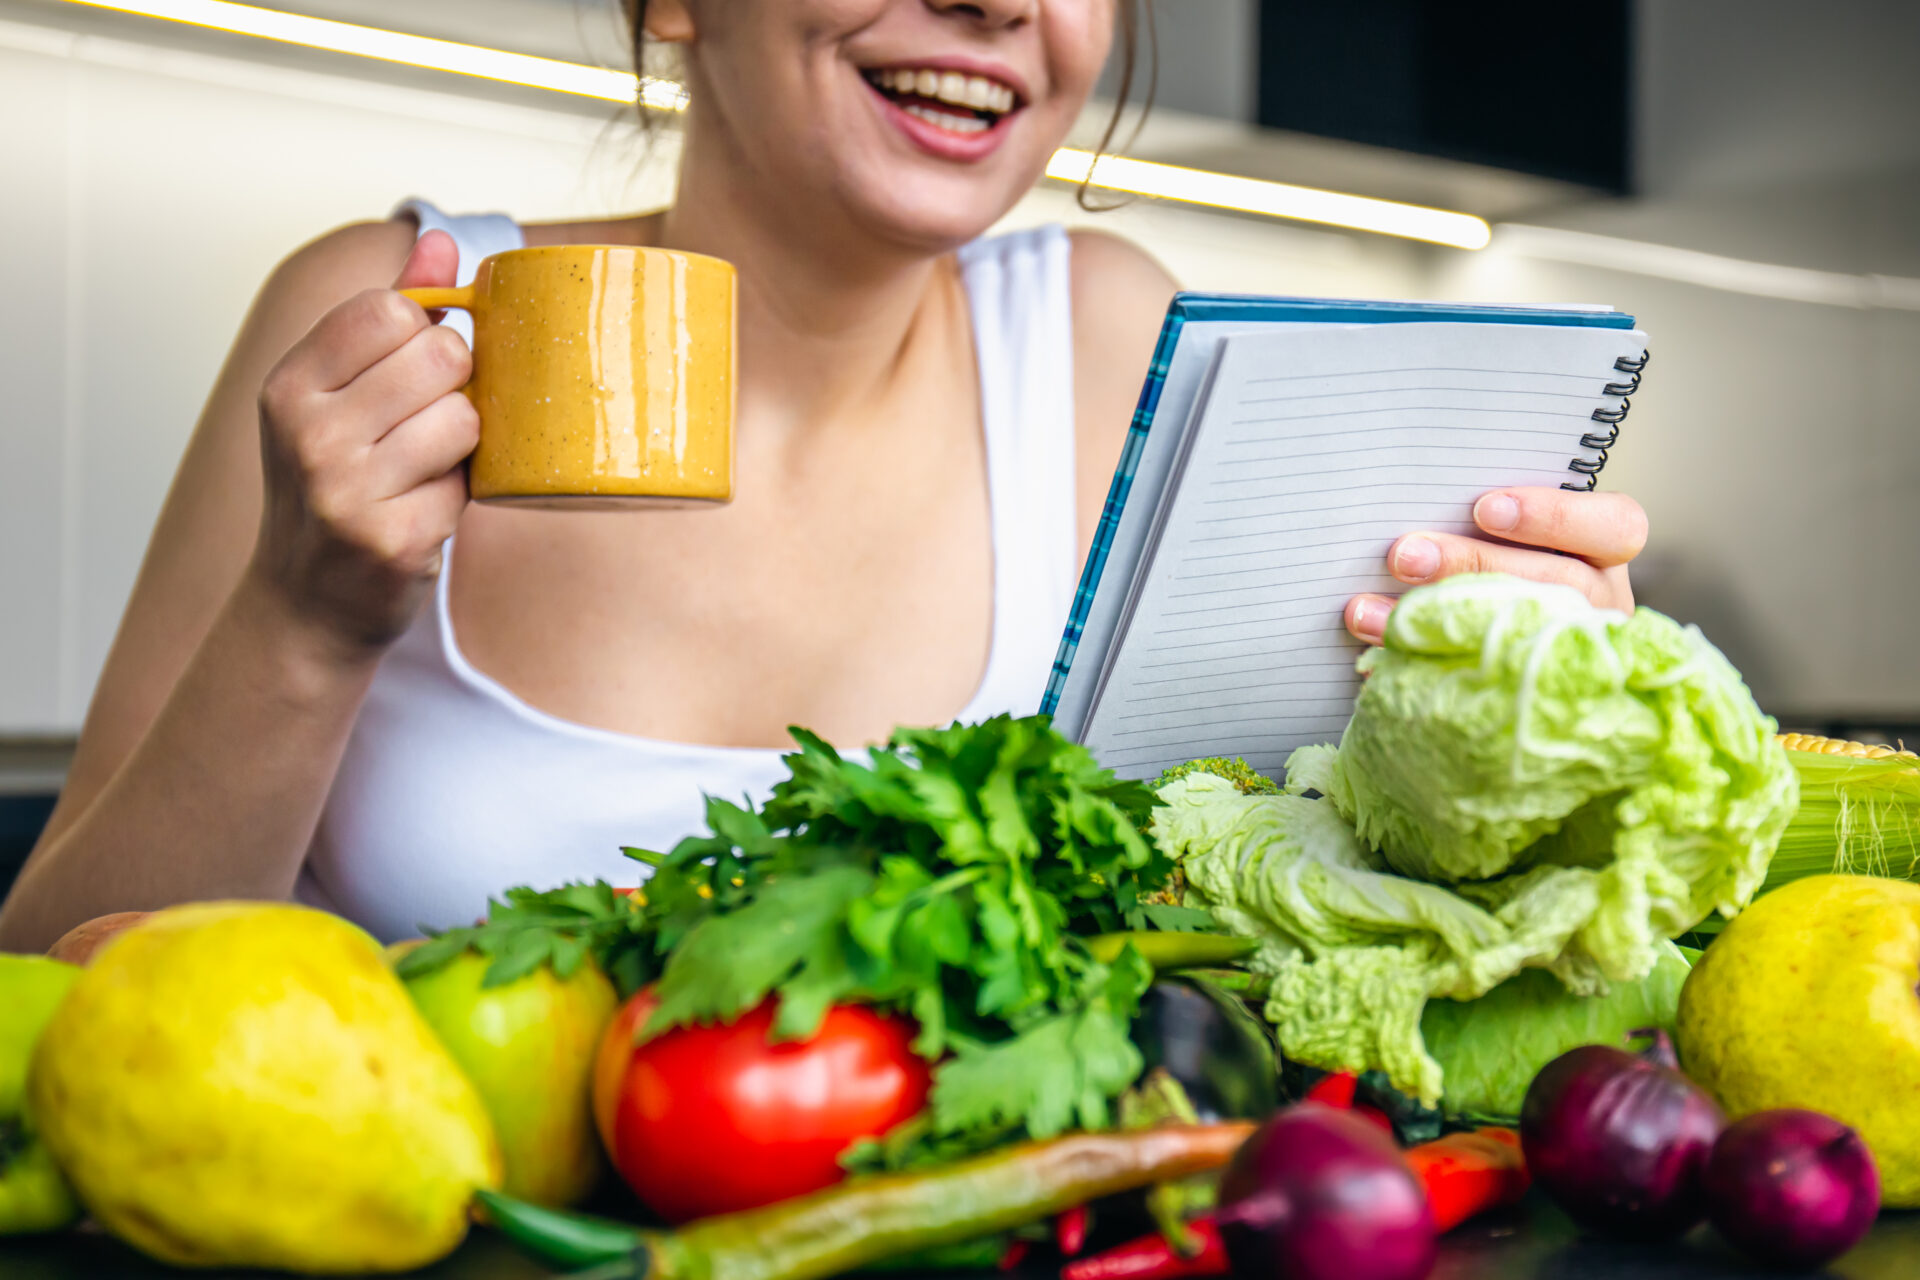 Frau liest in einer Küche in einem Notizbuch und trinkt dabei aus einer Tasse, vor ihr liegt verschiedenes Gemüse